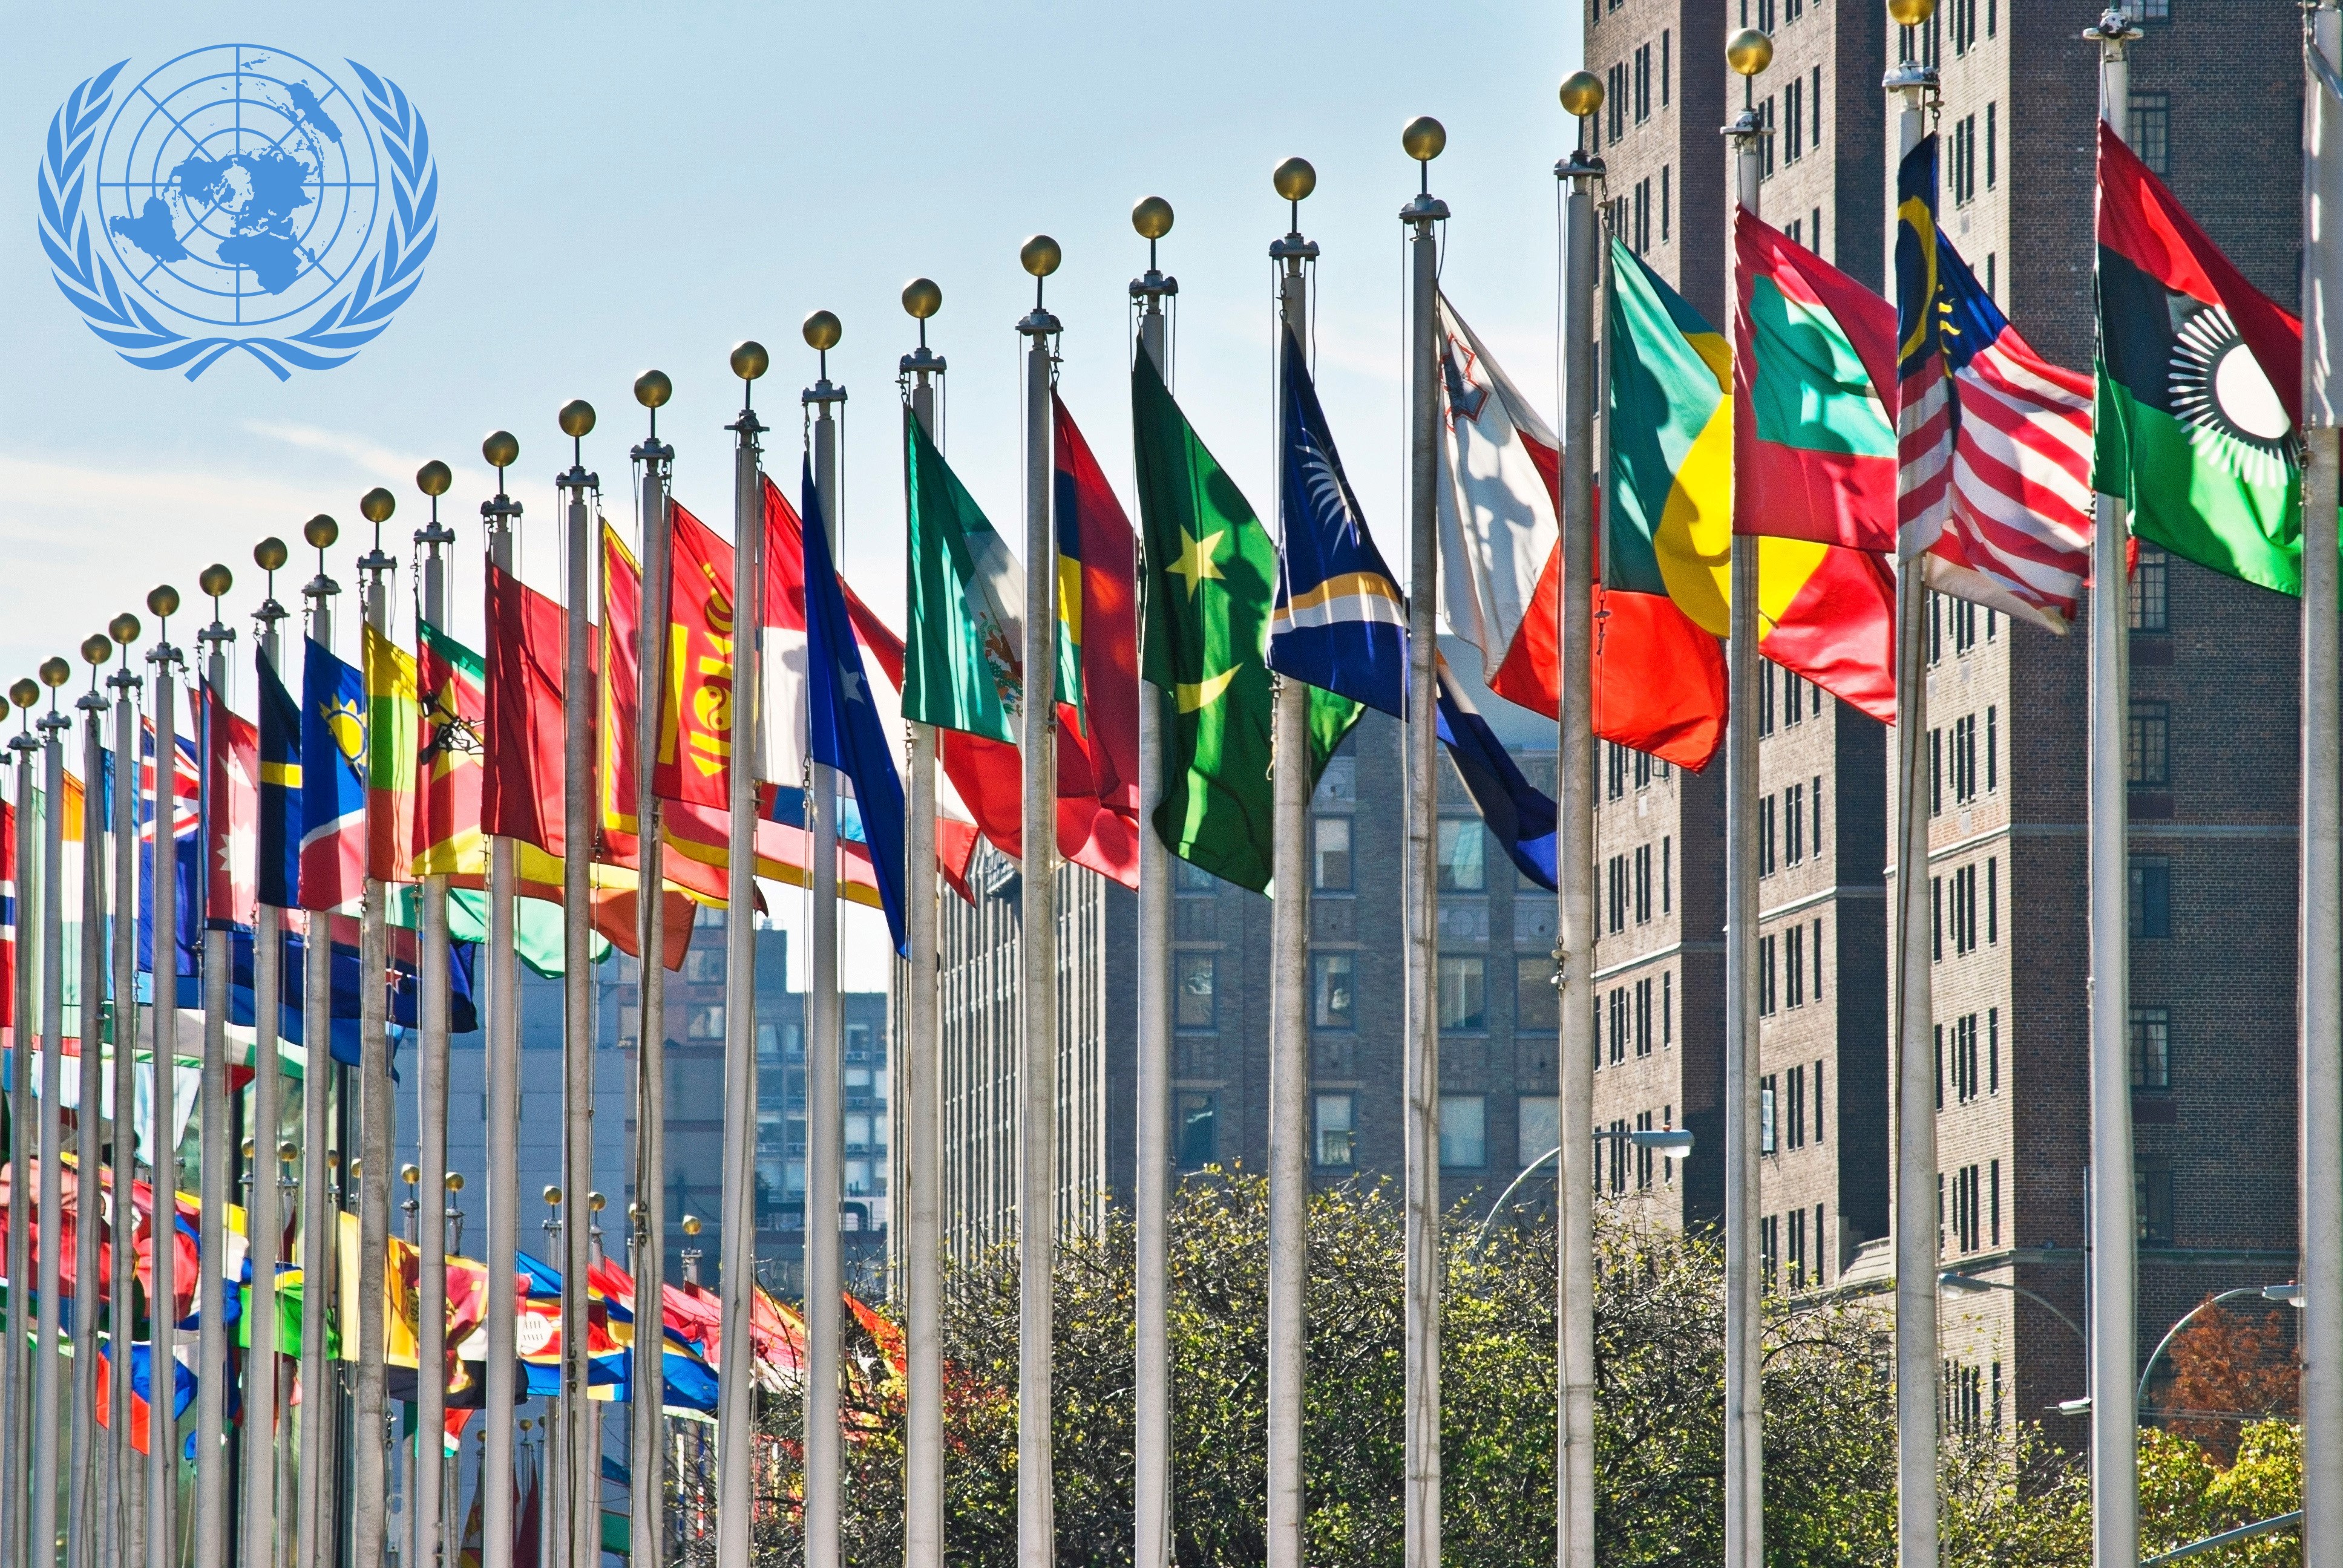 Россия в организации оон. Здание ООН (организации Объединённых наций) в Нью-Йорке. Флаги государств ООН. Здание ООН В Нью-Йорке флаги. ООН флаги стран РФ.